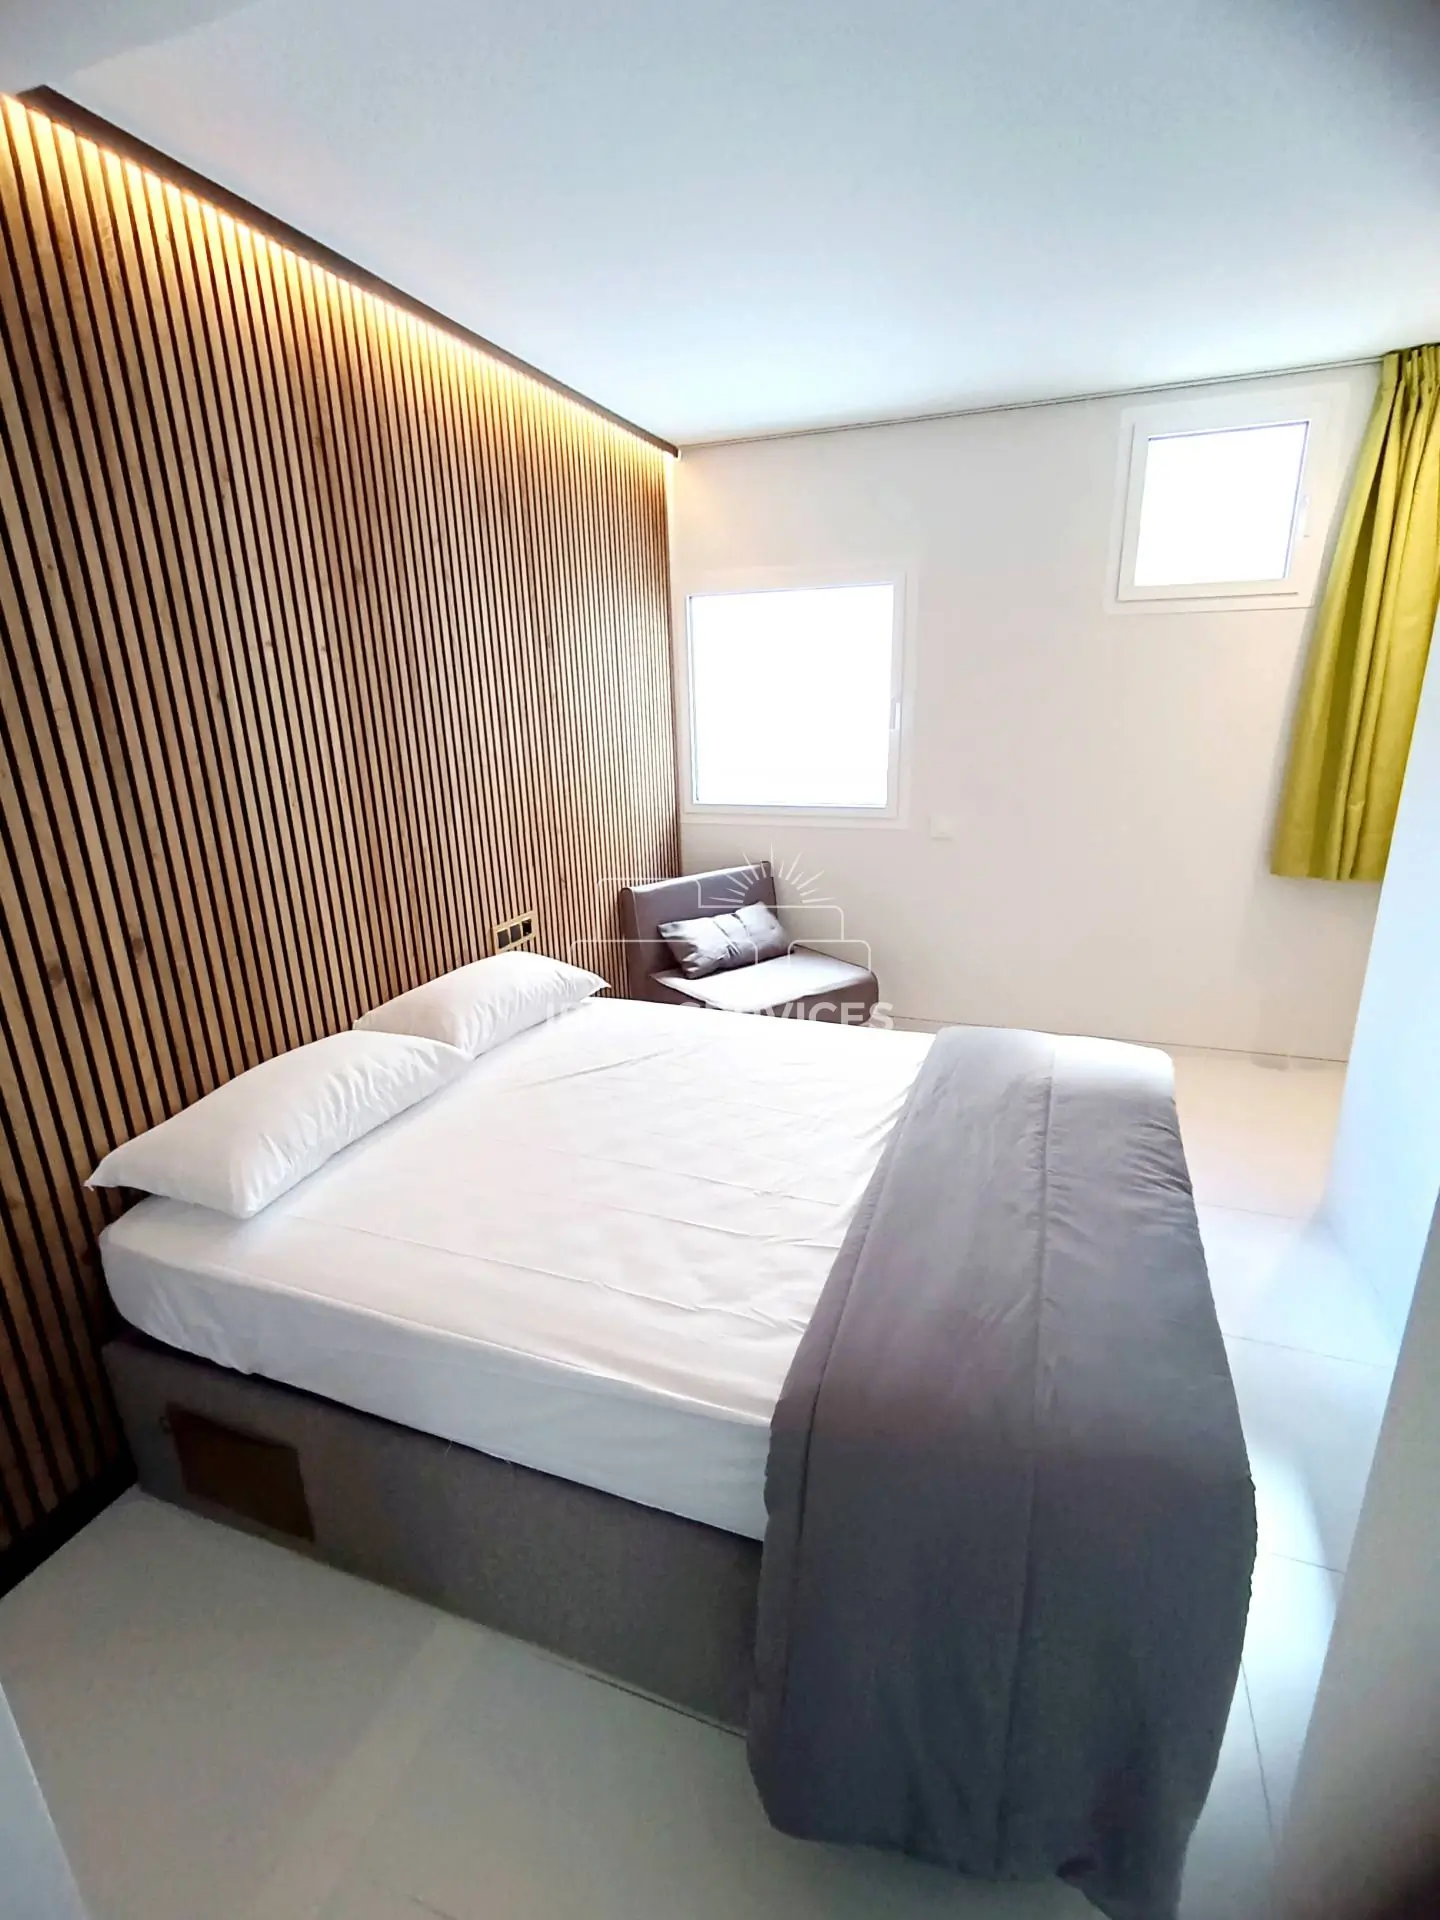 Patio blanco alquiler de  temporada piso de lujo 2 dormitorios